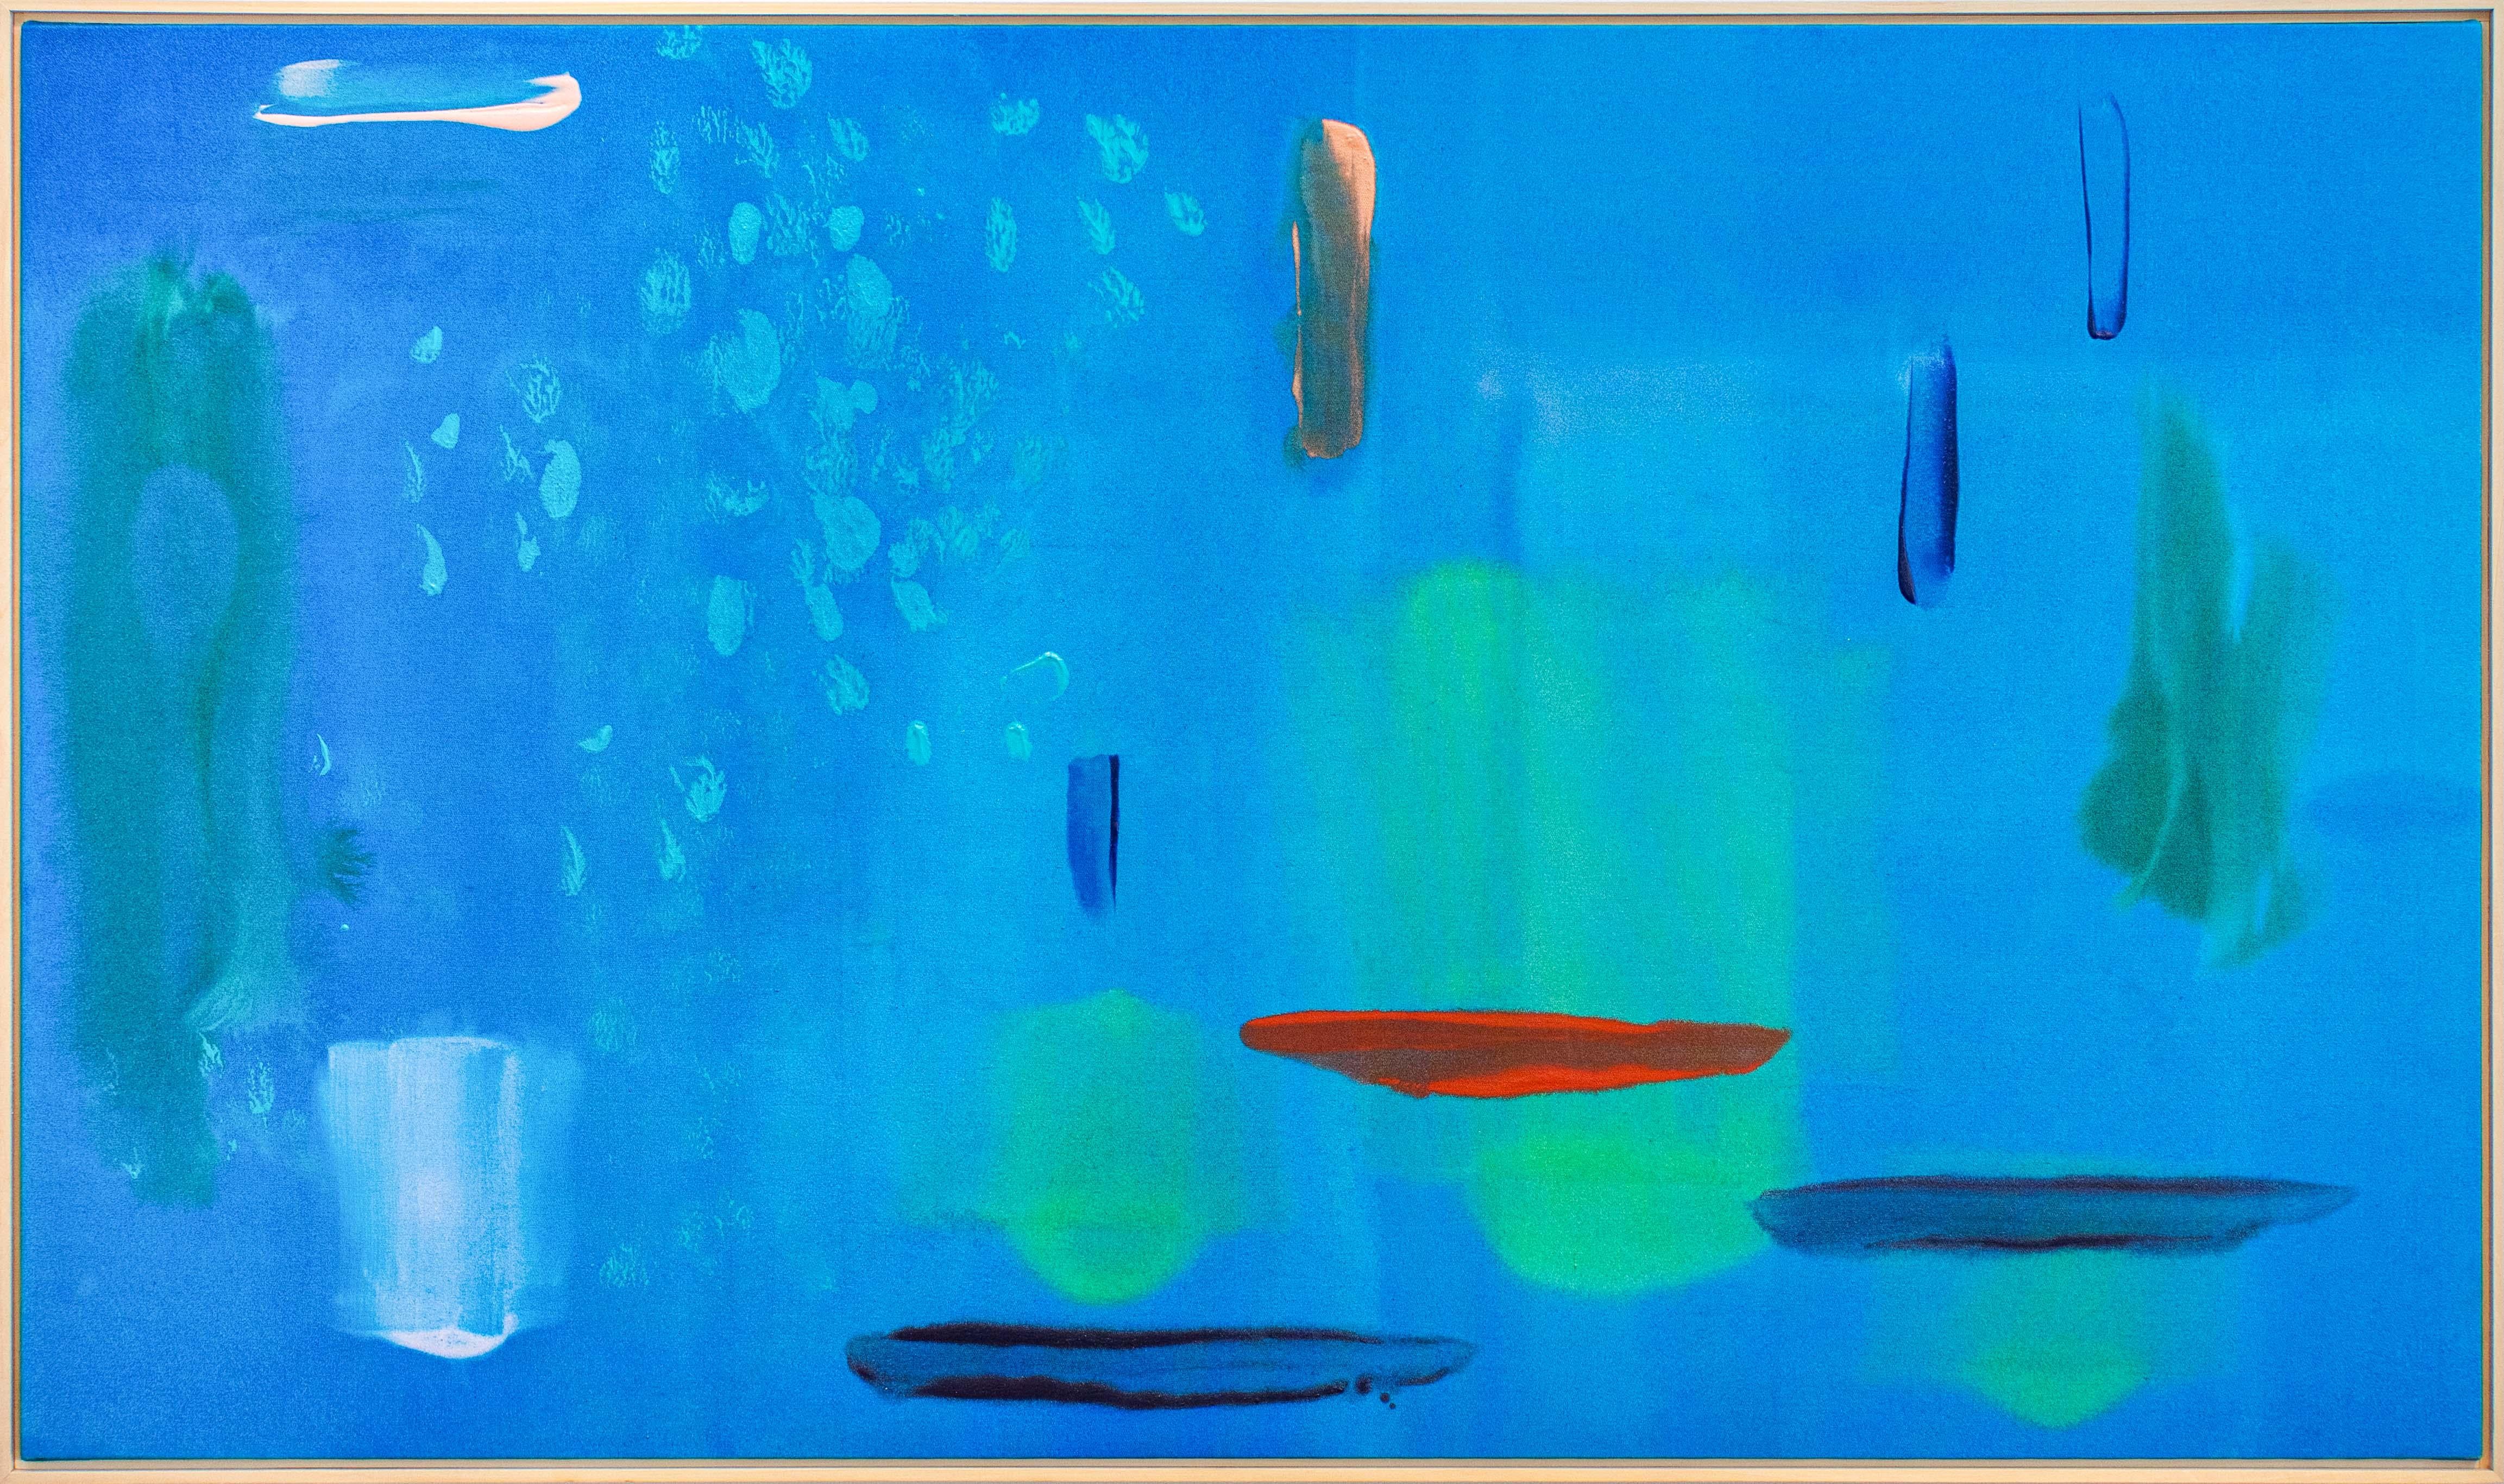 Blue Lagoon - groß, farbenfroh, modernist, gestisch abstrakt, Acryl auf Leinwand – Painting von Milly Ristvedt